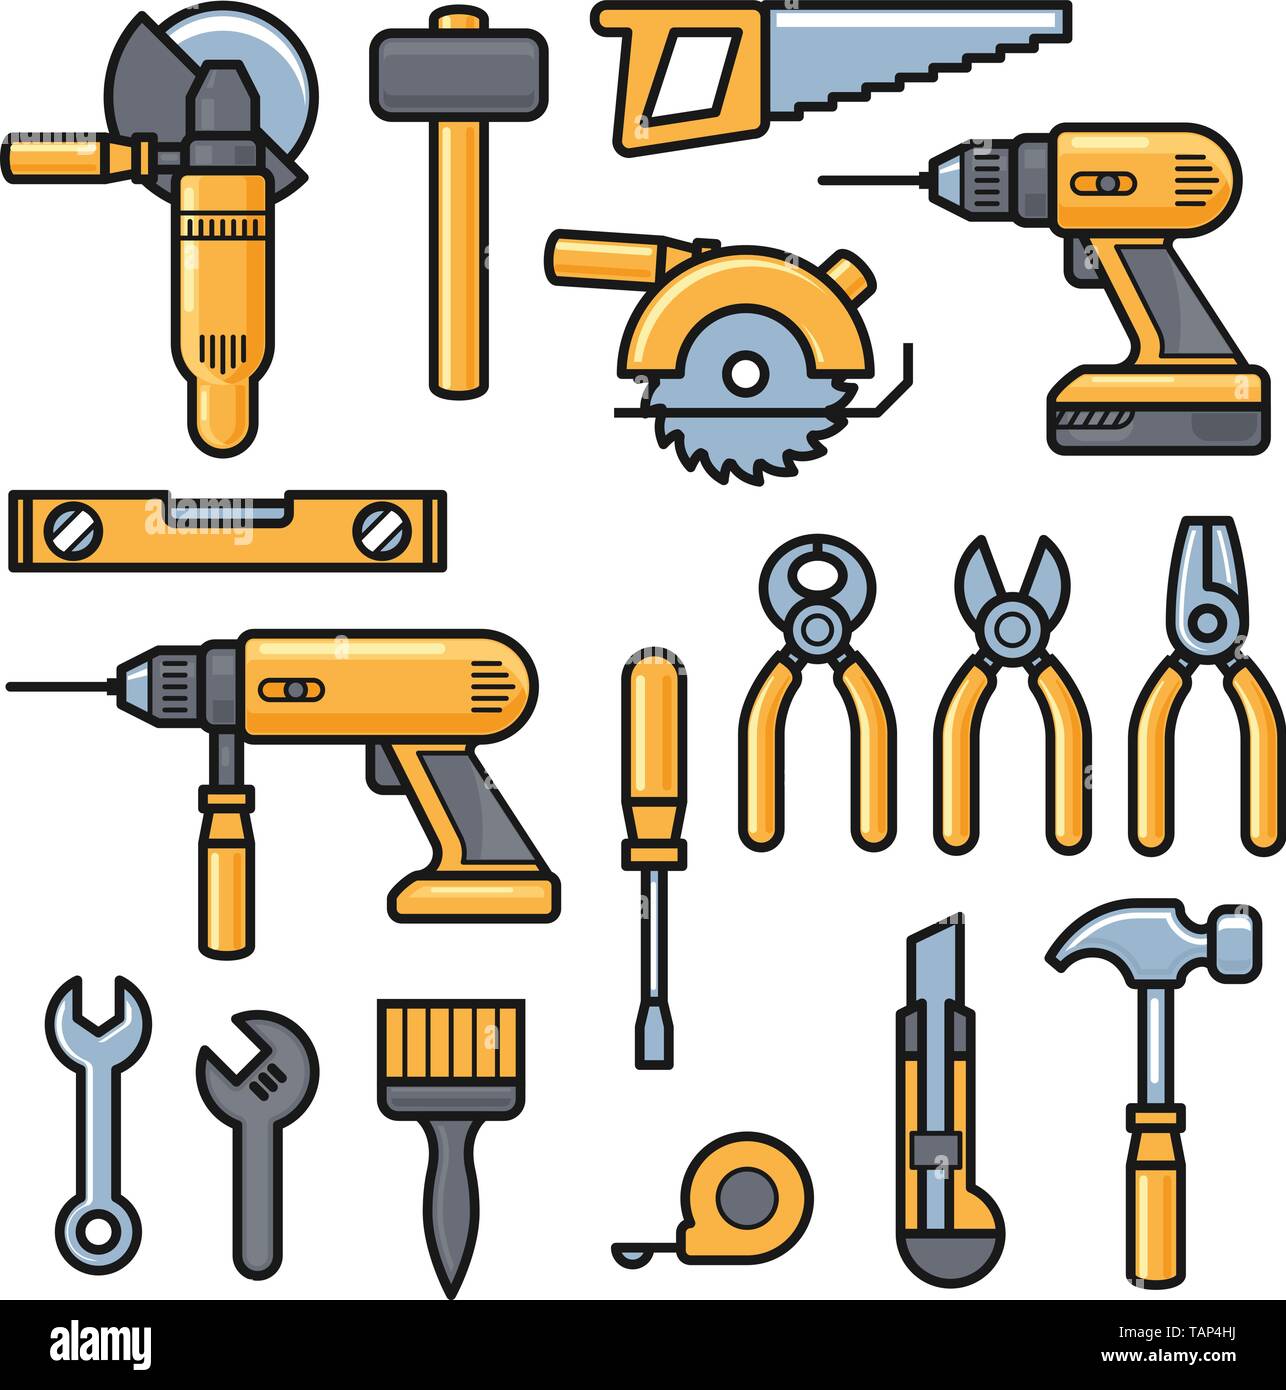 Bâtiment et outils de réparation d'outils de construction, d'icônes - kit  perceuse, marteau, tournevis, scie, fichier, couteau à mastic, règle,  casque, rouleau, pinceau, boîte à outils Image Vectorielle Stock - Alamy